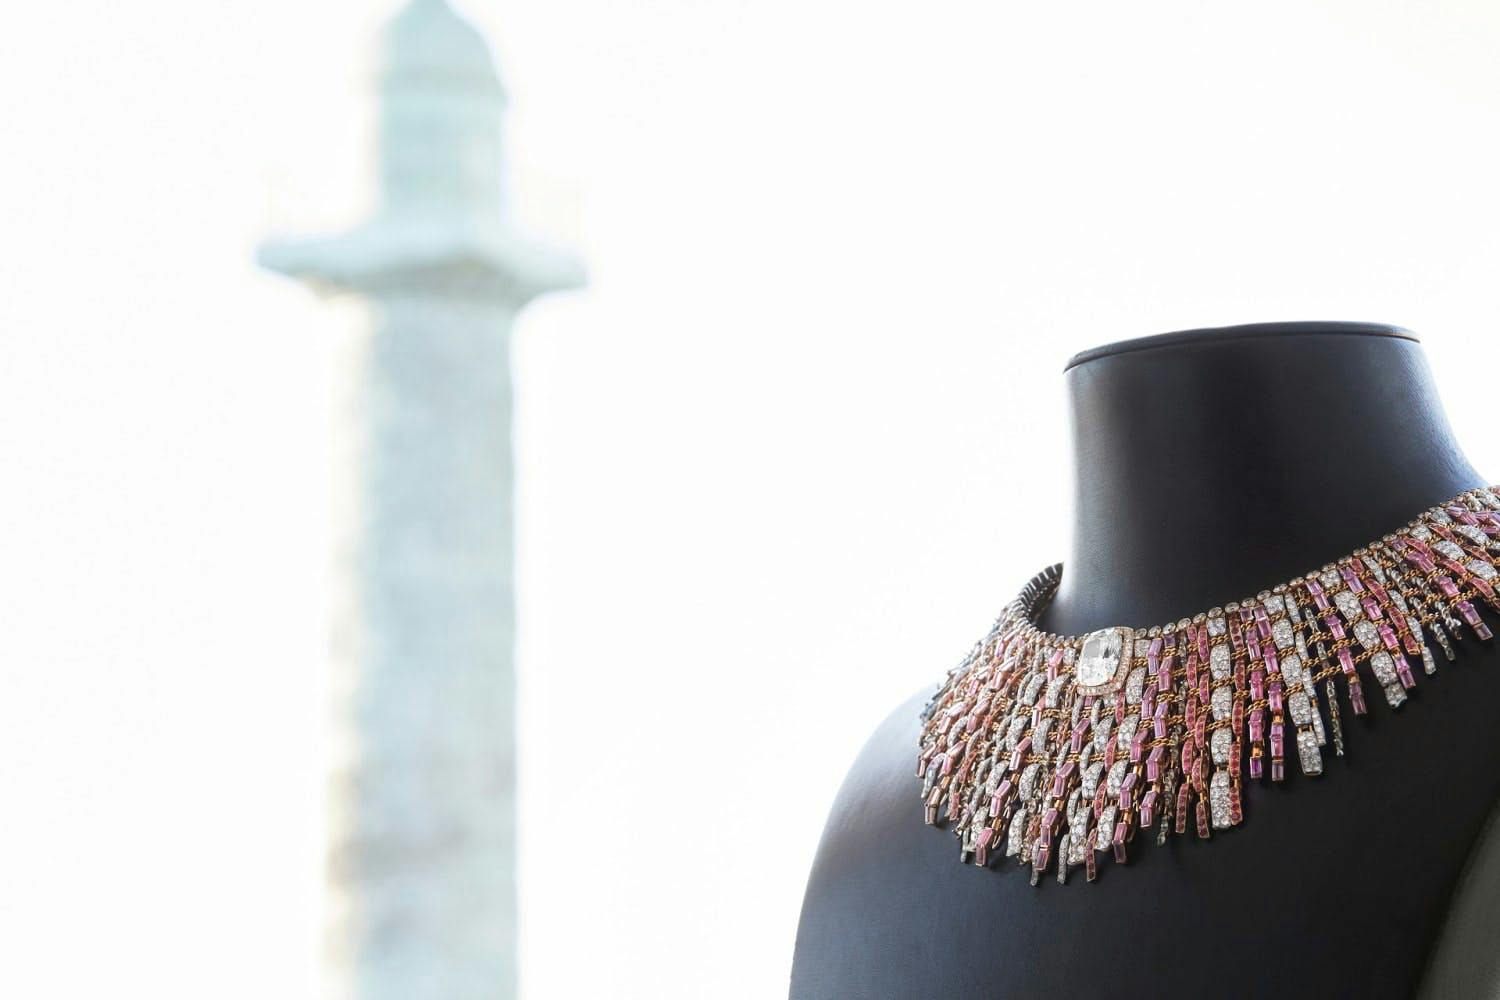 Vėrinys „Tweed Couture“, CHANEL aukštosios juvelyrikos kolekcija, CHANEL nuotr.